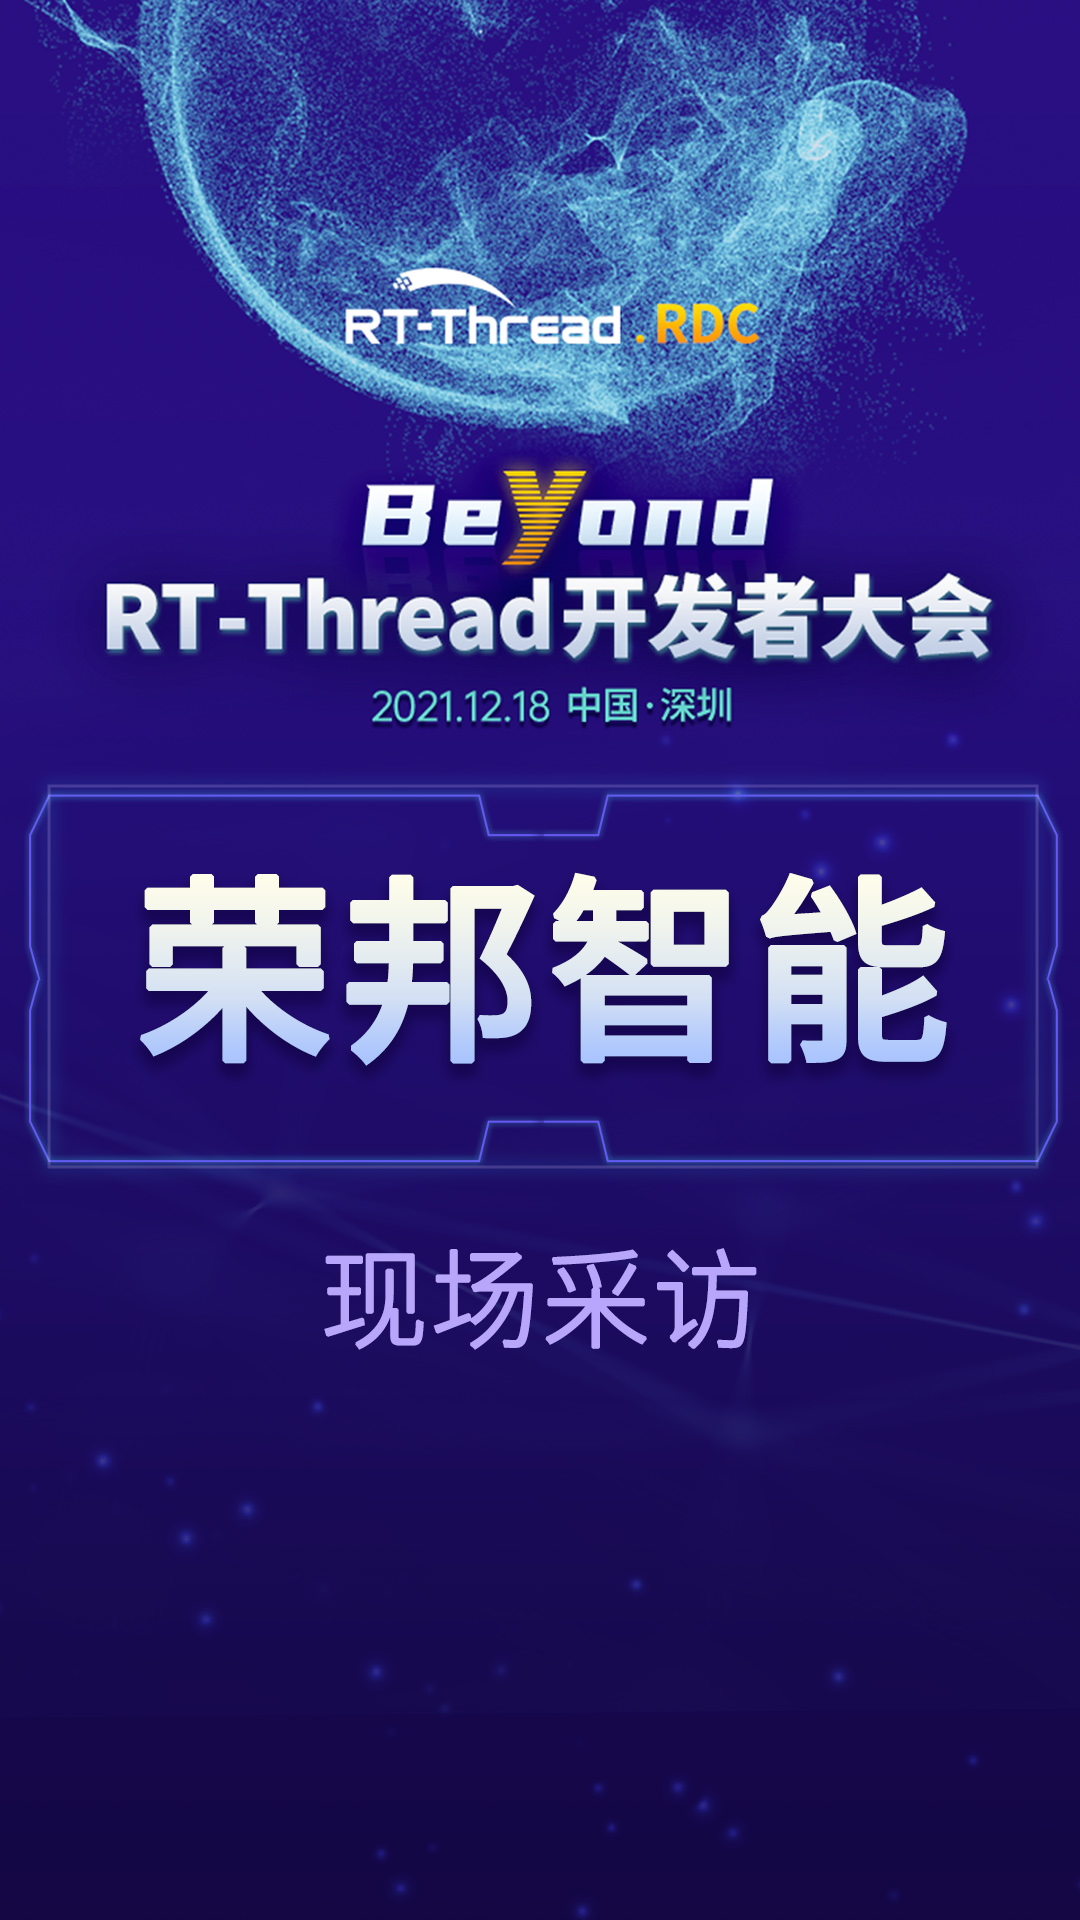 RT-Thread开发者大会-荣邦智能企业现场采访#嵌入式开发 